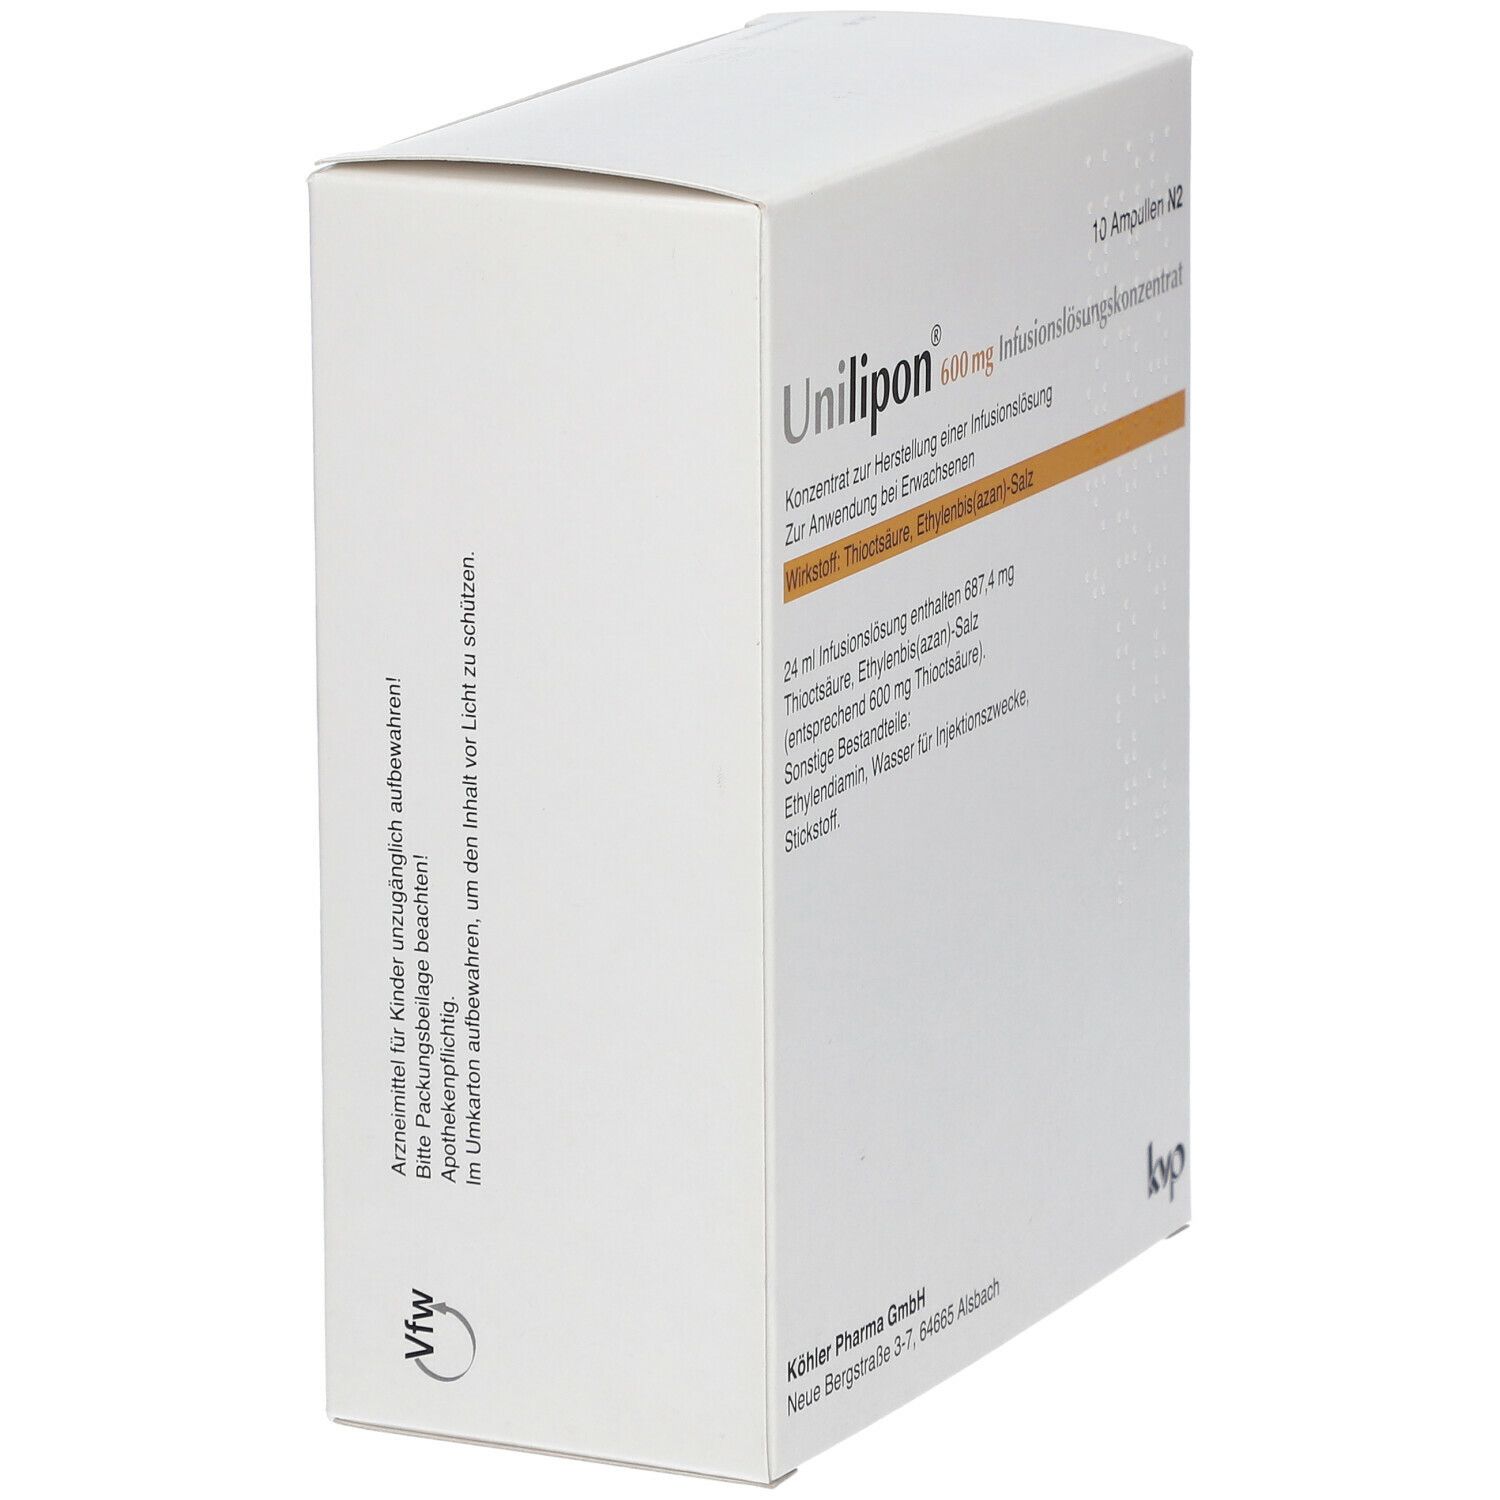 Unilipon® 600 mg Infusionslösungskonzentrat